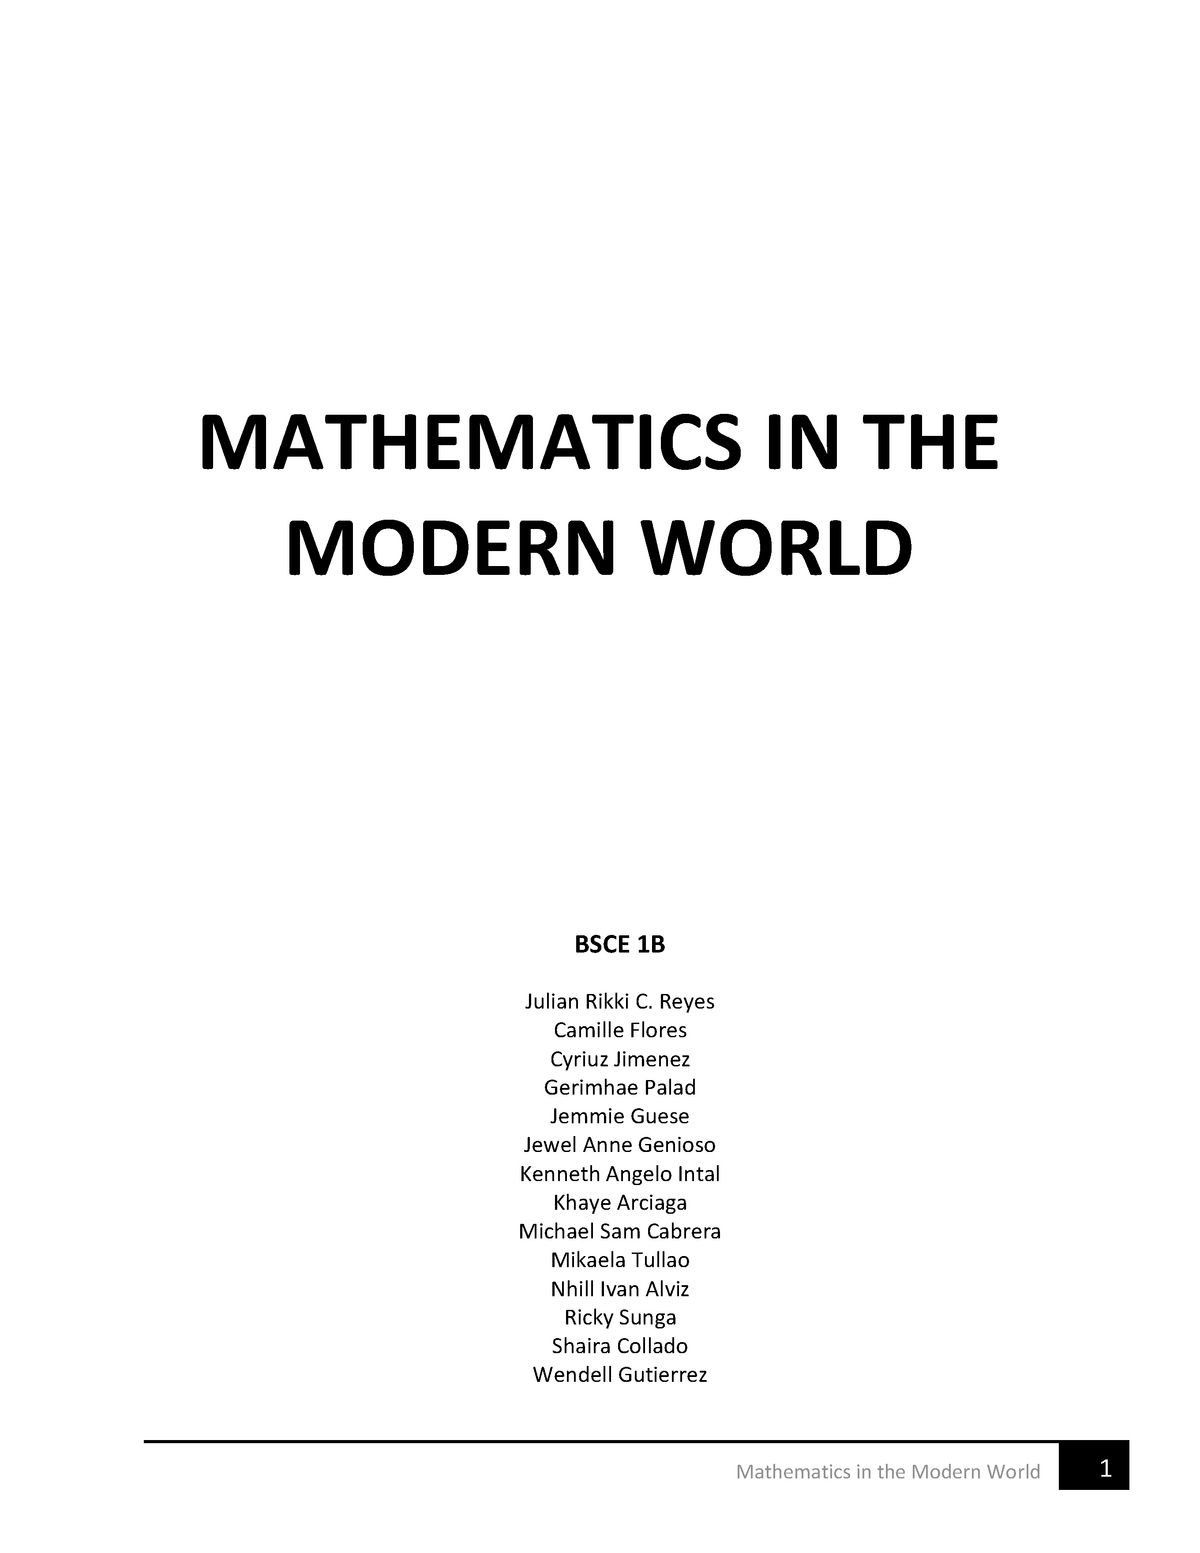 essay about mathematics in modern world